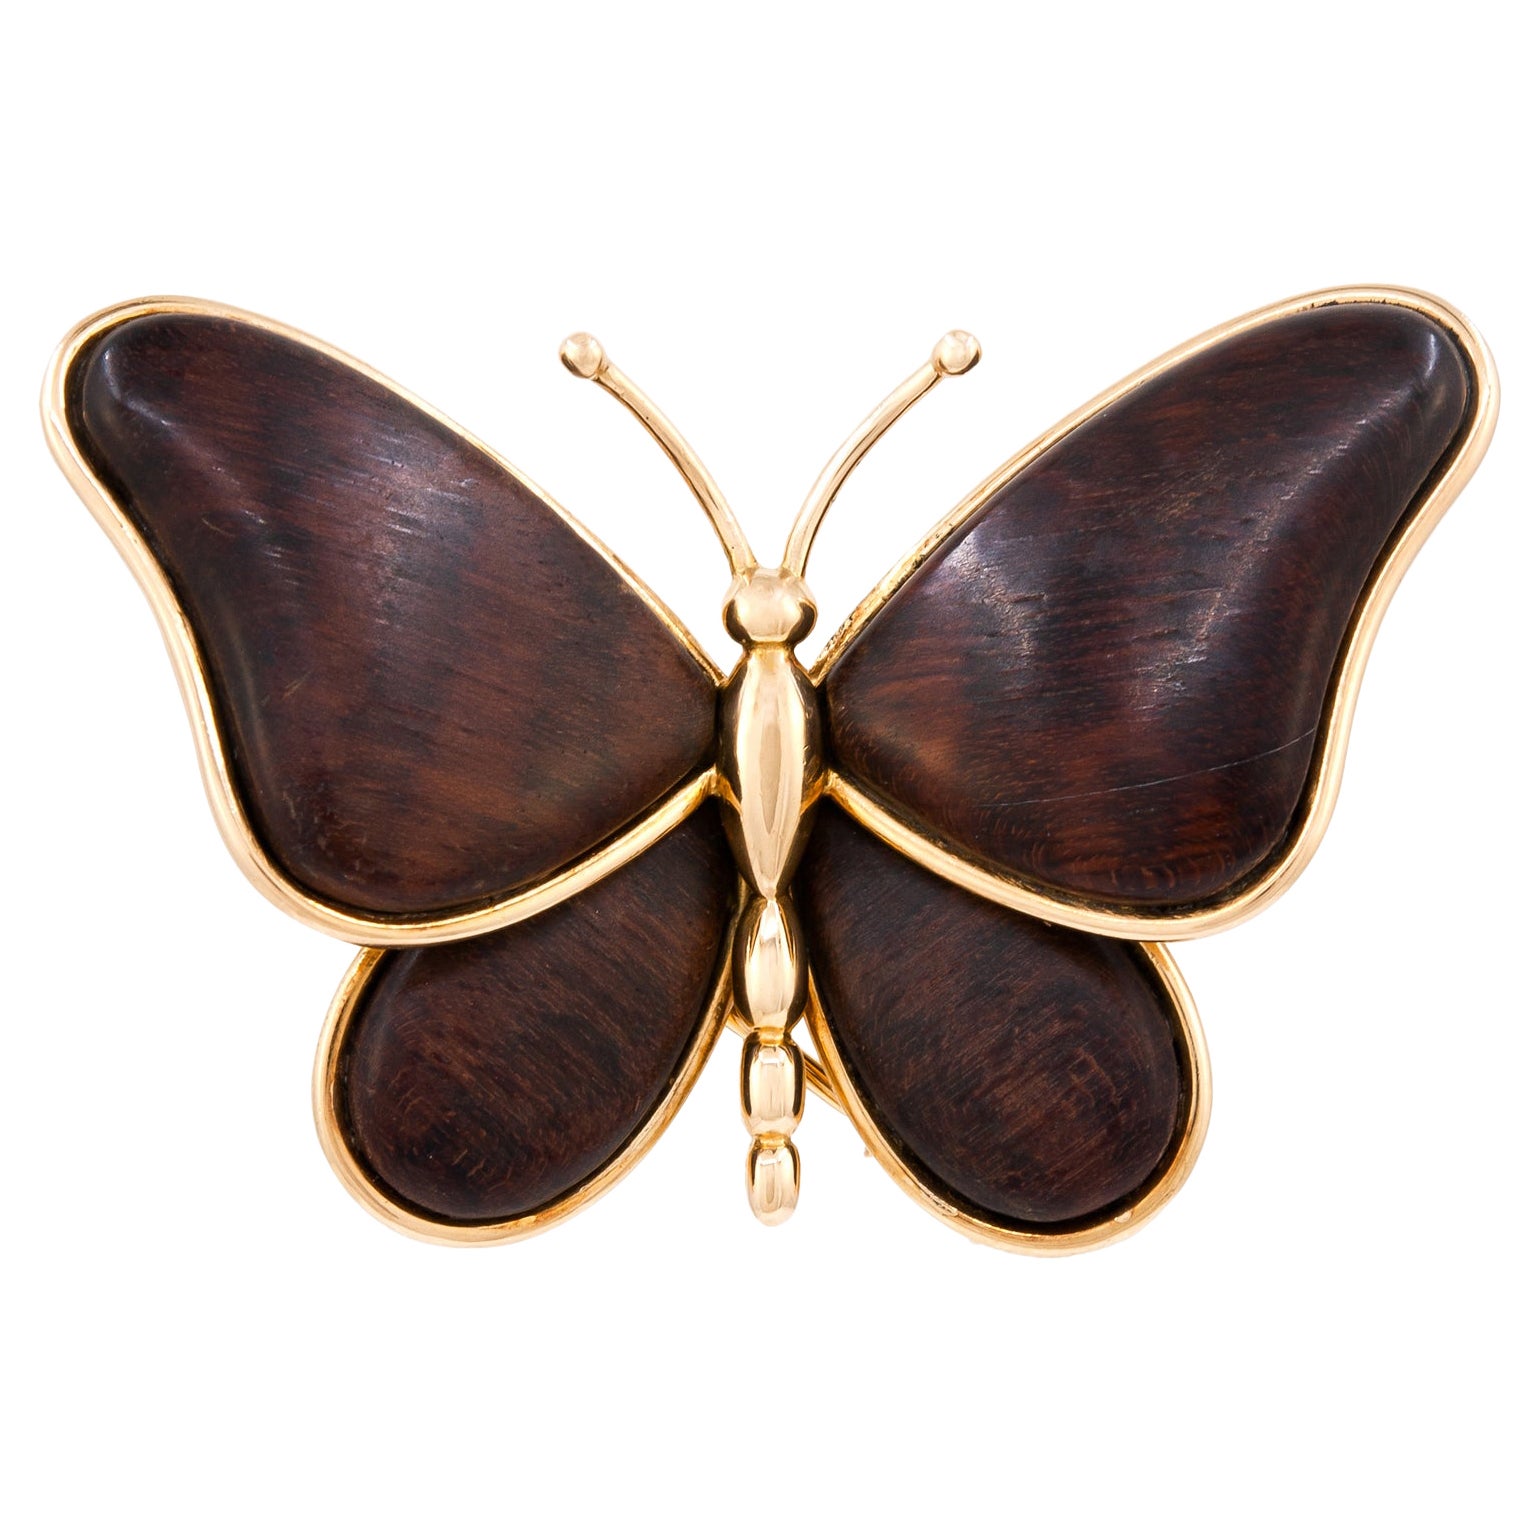 VAN CLEEF & ARPELS Broche papillon en bois
Broche/clip en or jaune 18 carats à motif de papillon.
Estampillé 